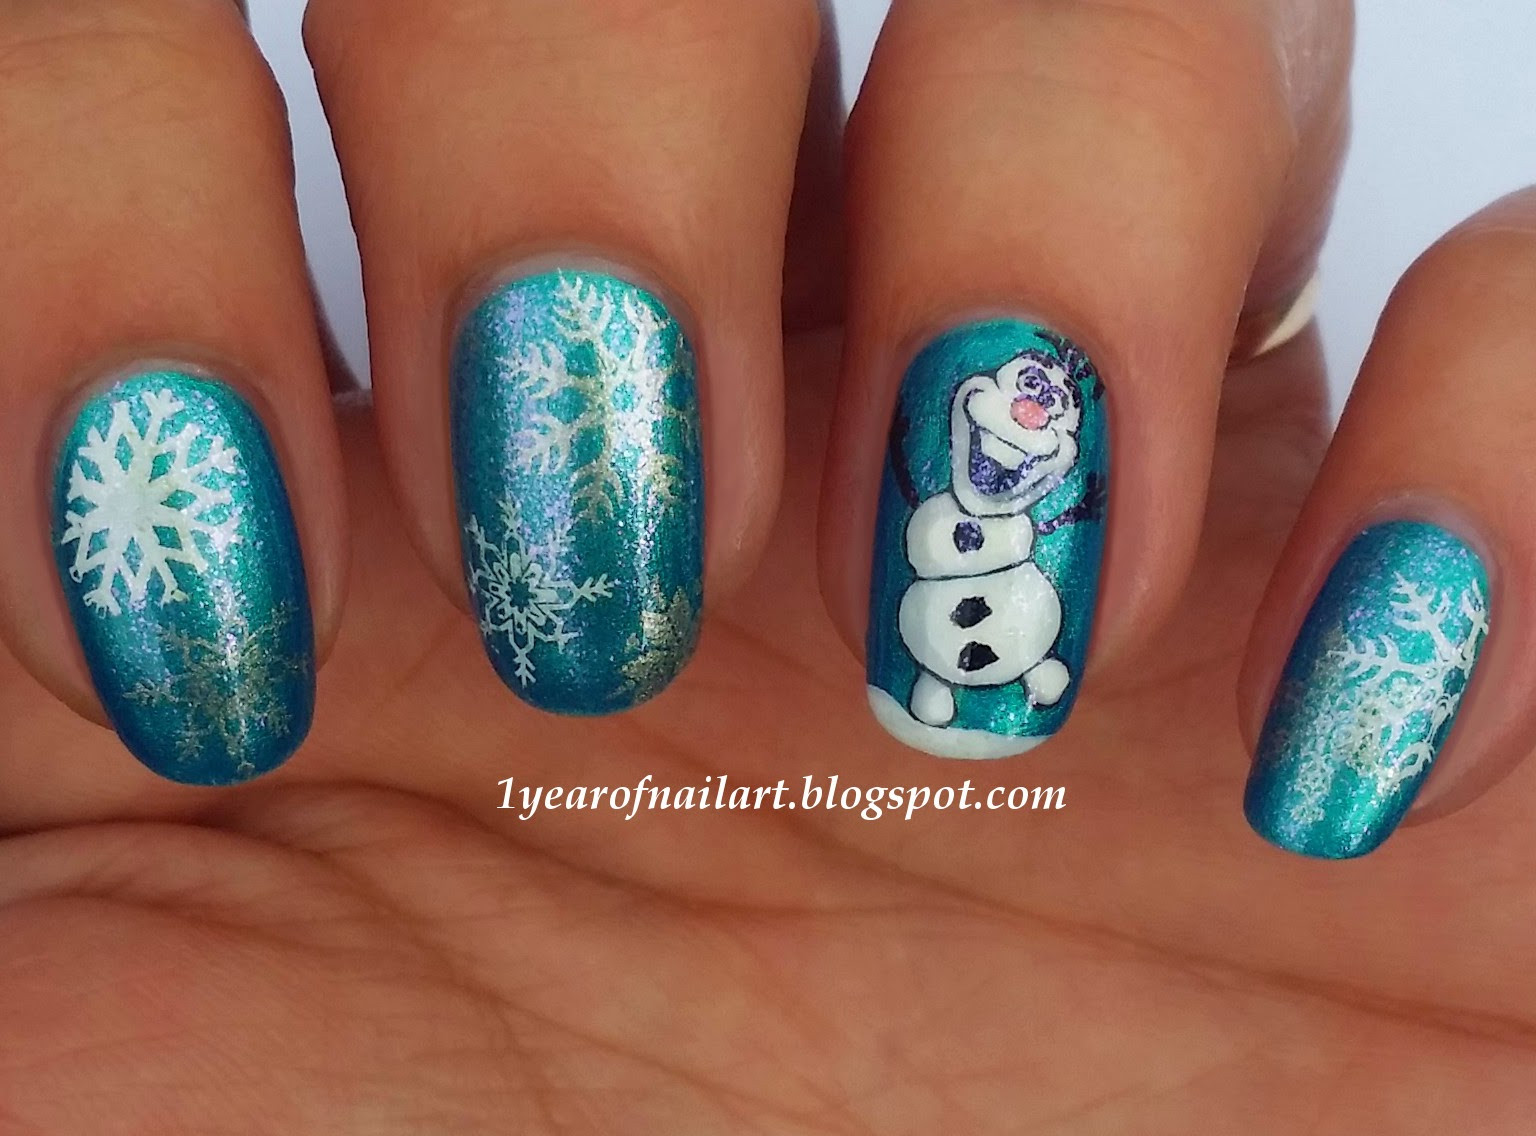 Olaf Nail Designs
 365 days of nail art Disney Frozen Olaf nail art